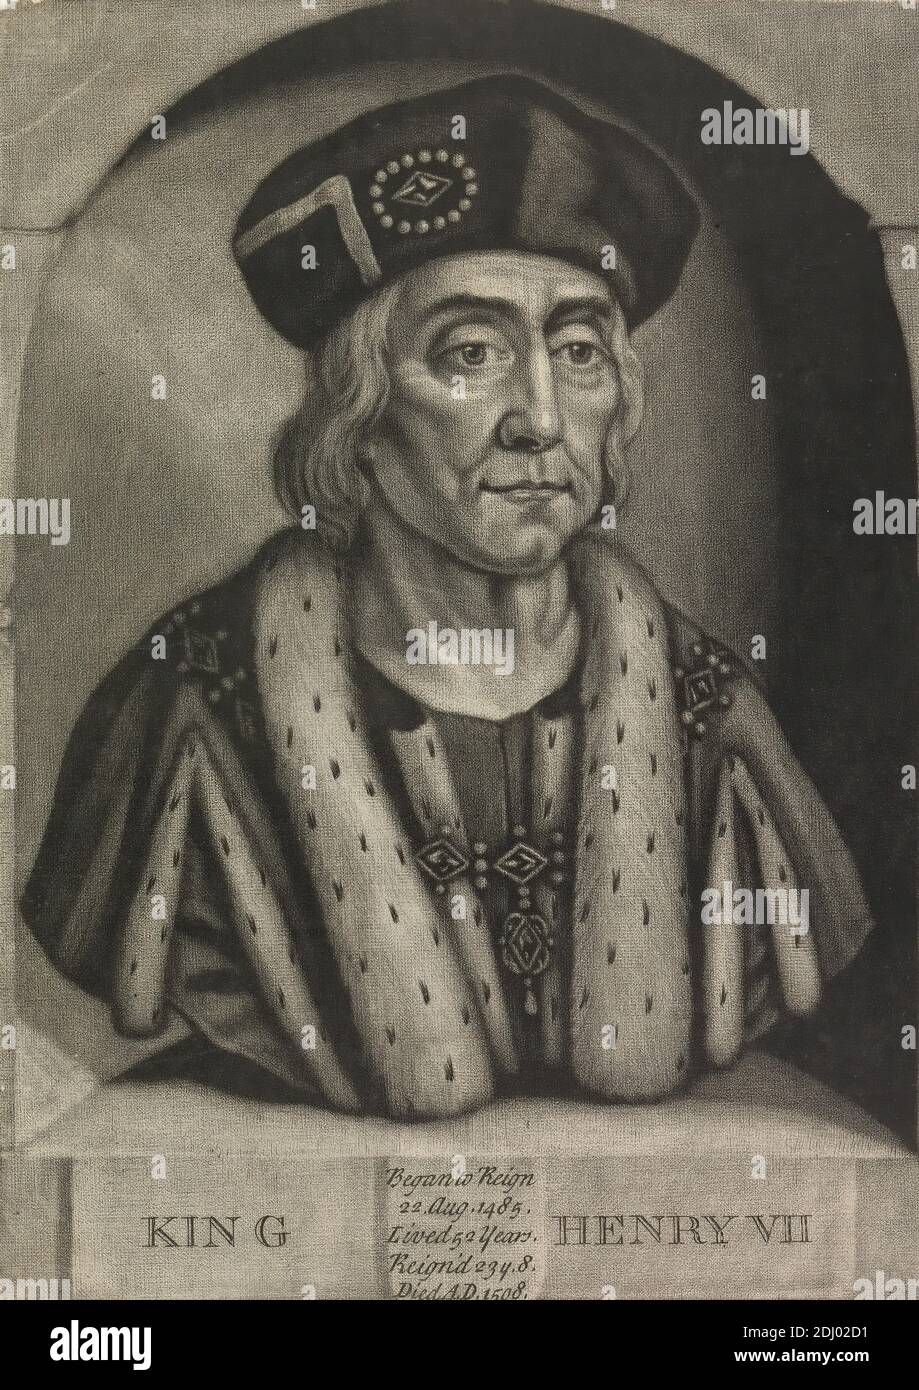 Henry Vii 1485-1509 King Of England Kids T-Shirt by Vintage Design Pics -  Pixels